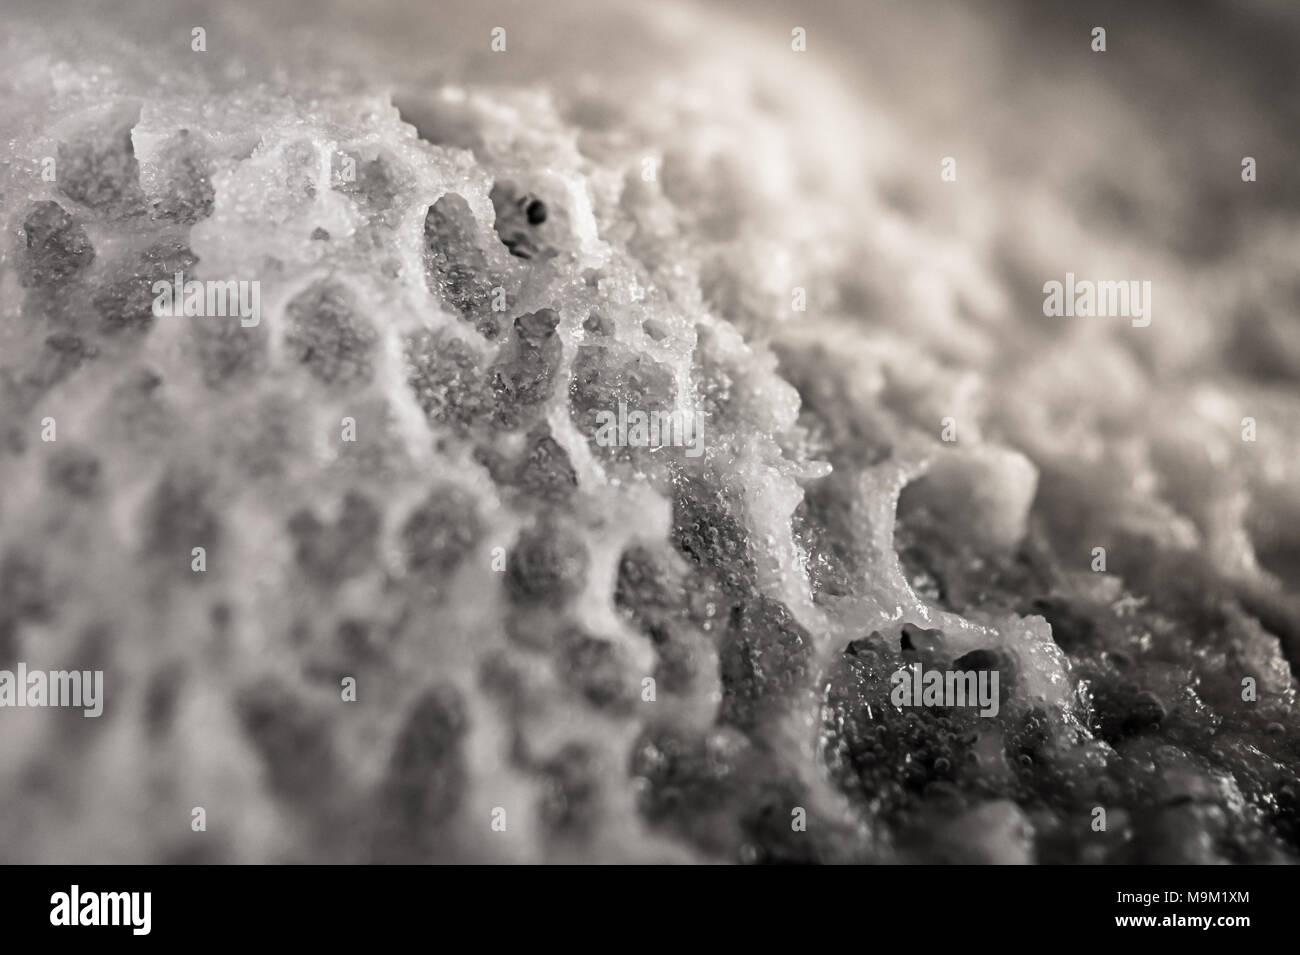 Abstrakte außerirdische Landschaft. Natron; Essig chemische Reaktion Produkt, Natriumacetat, heißes Eis. Stockfoto